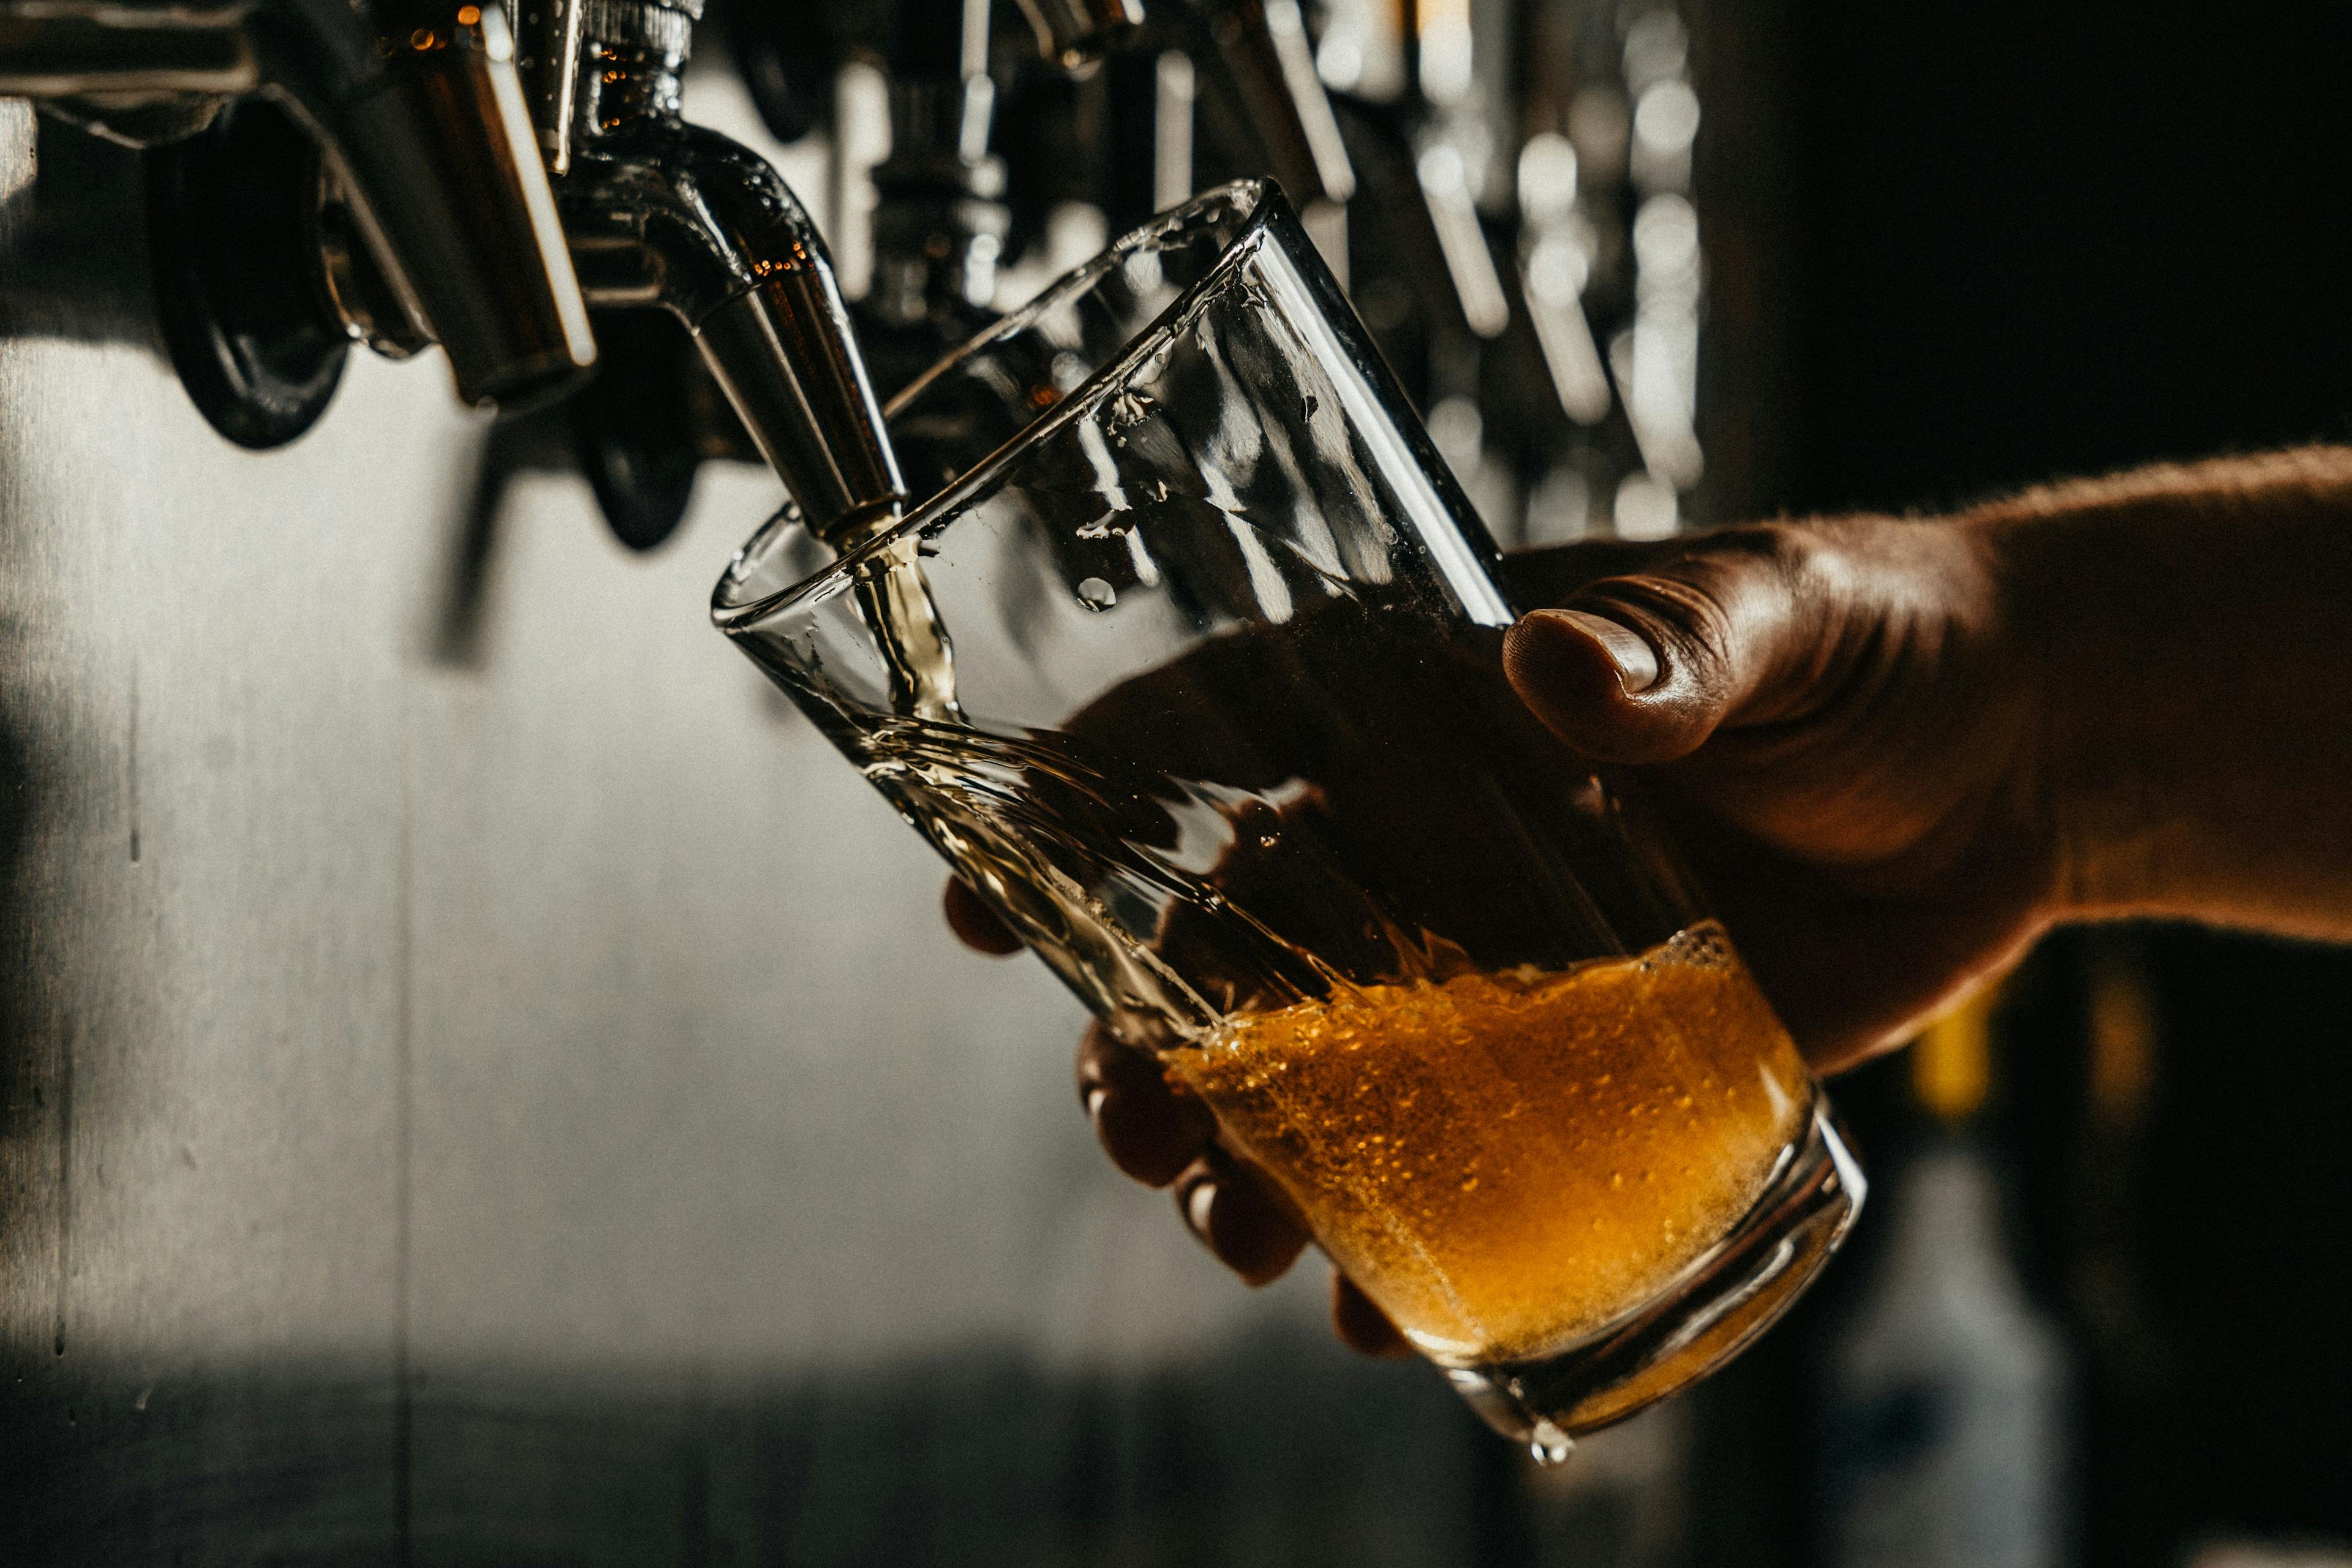 Bofferding Brewery to host open doors on October 15